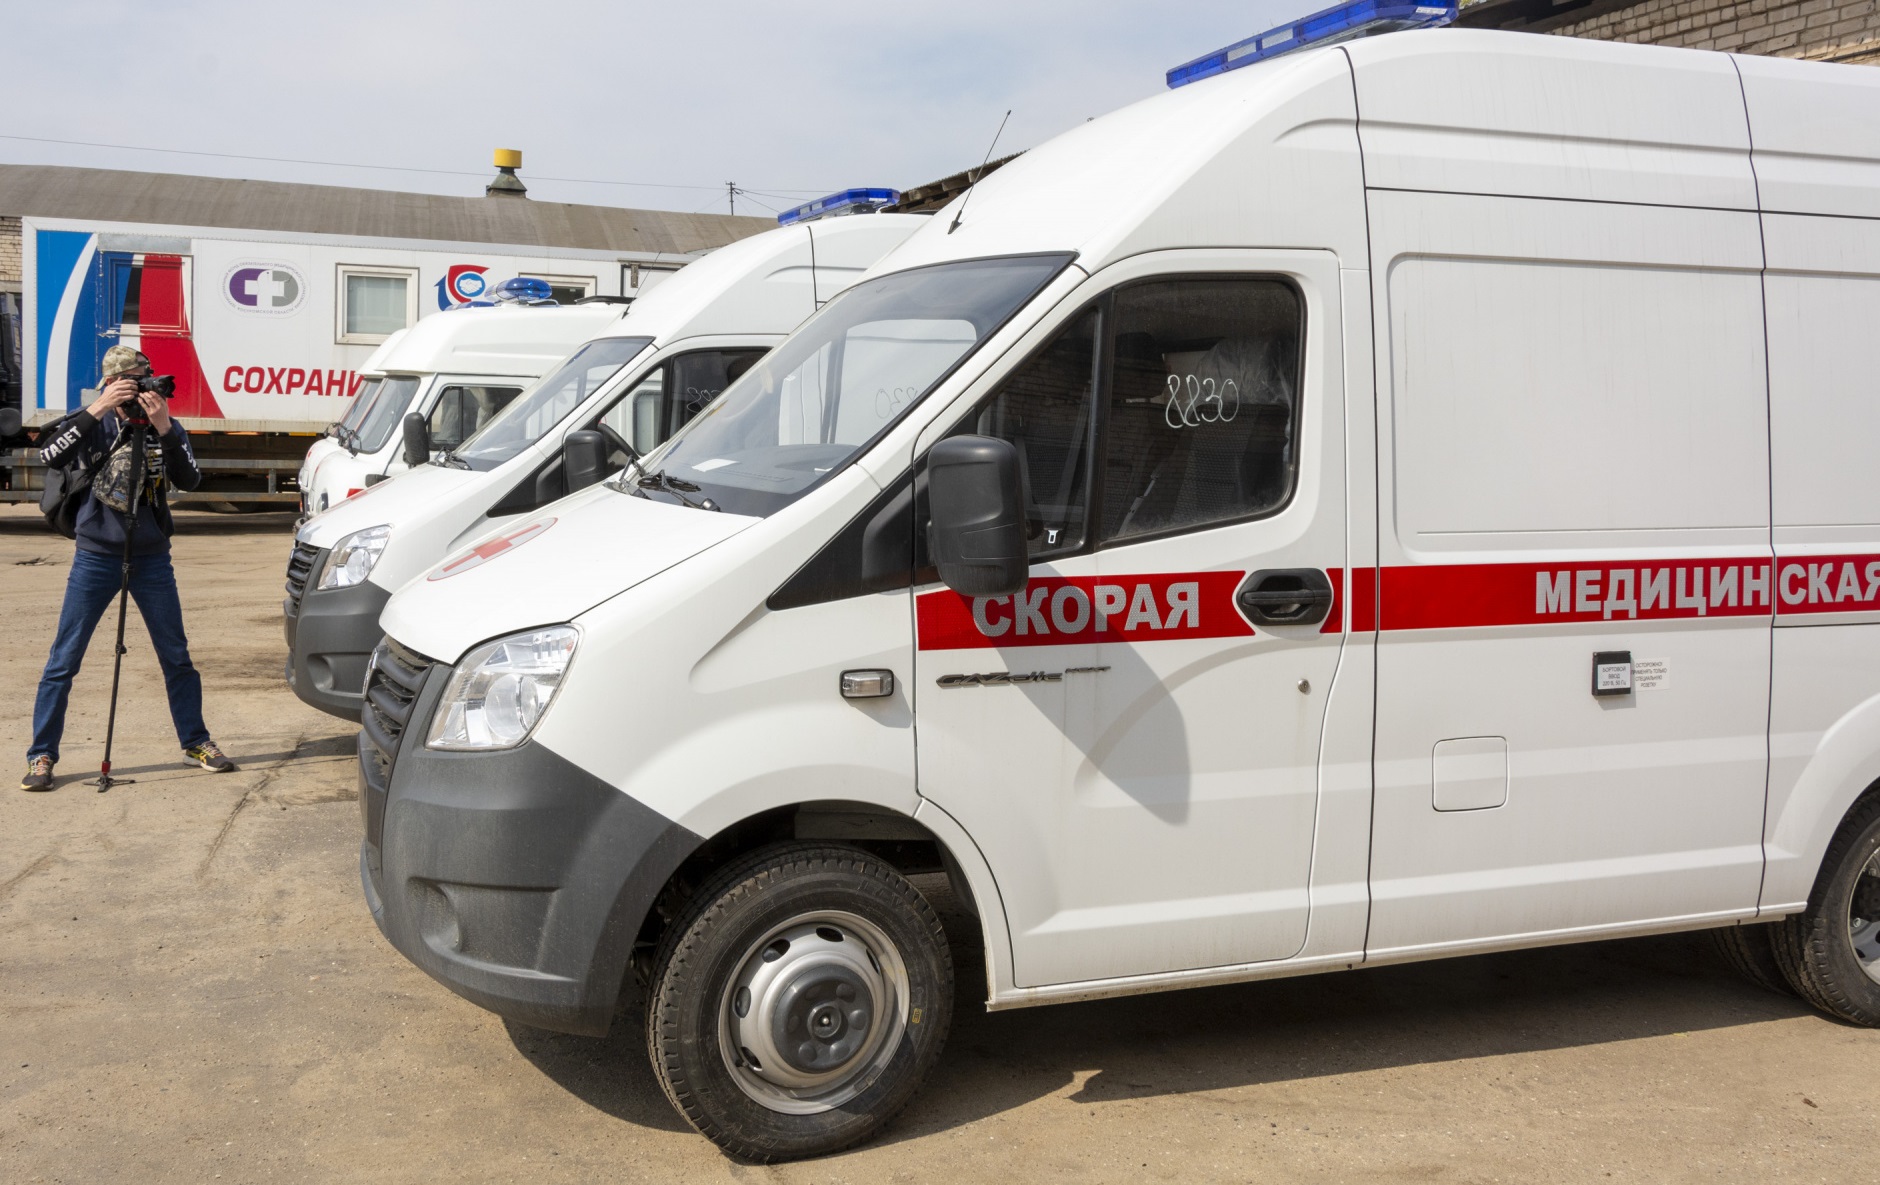 6 райцентров Костромской области получат новые машины скорой помощи